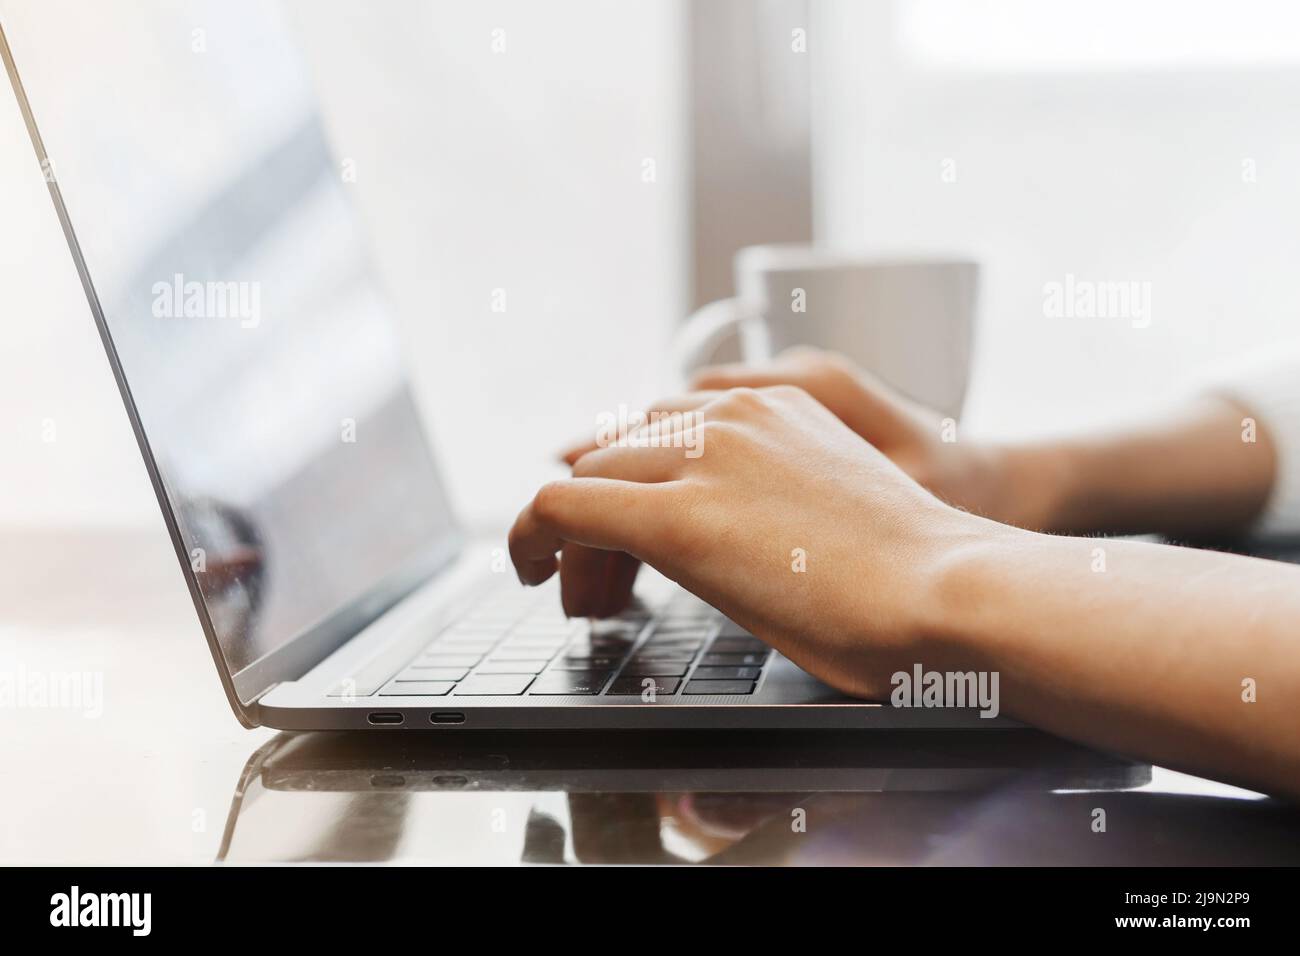 Nahaufnahme der Hände einer jungen Frau, die in einem Café auf einem Laptop tippt. Freiberufler arbeitet in einem Café. Laptop, Hände und Kaffeebecher Stockfoto